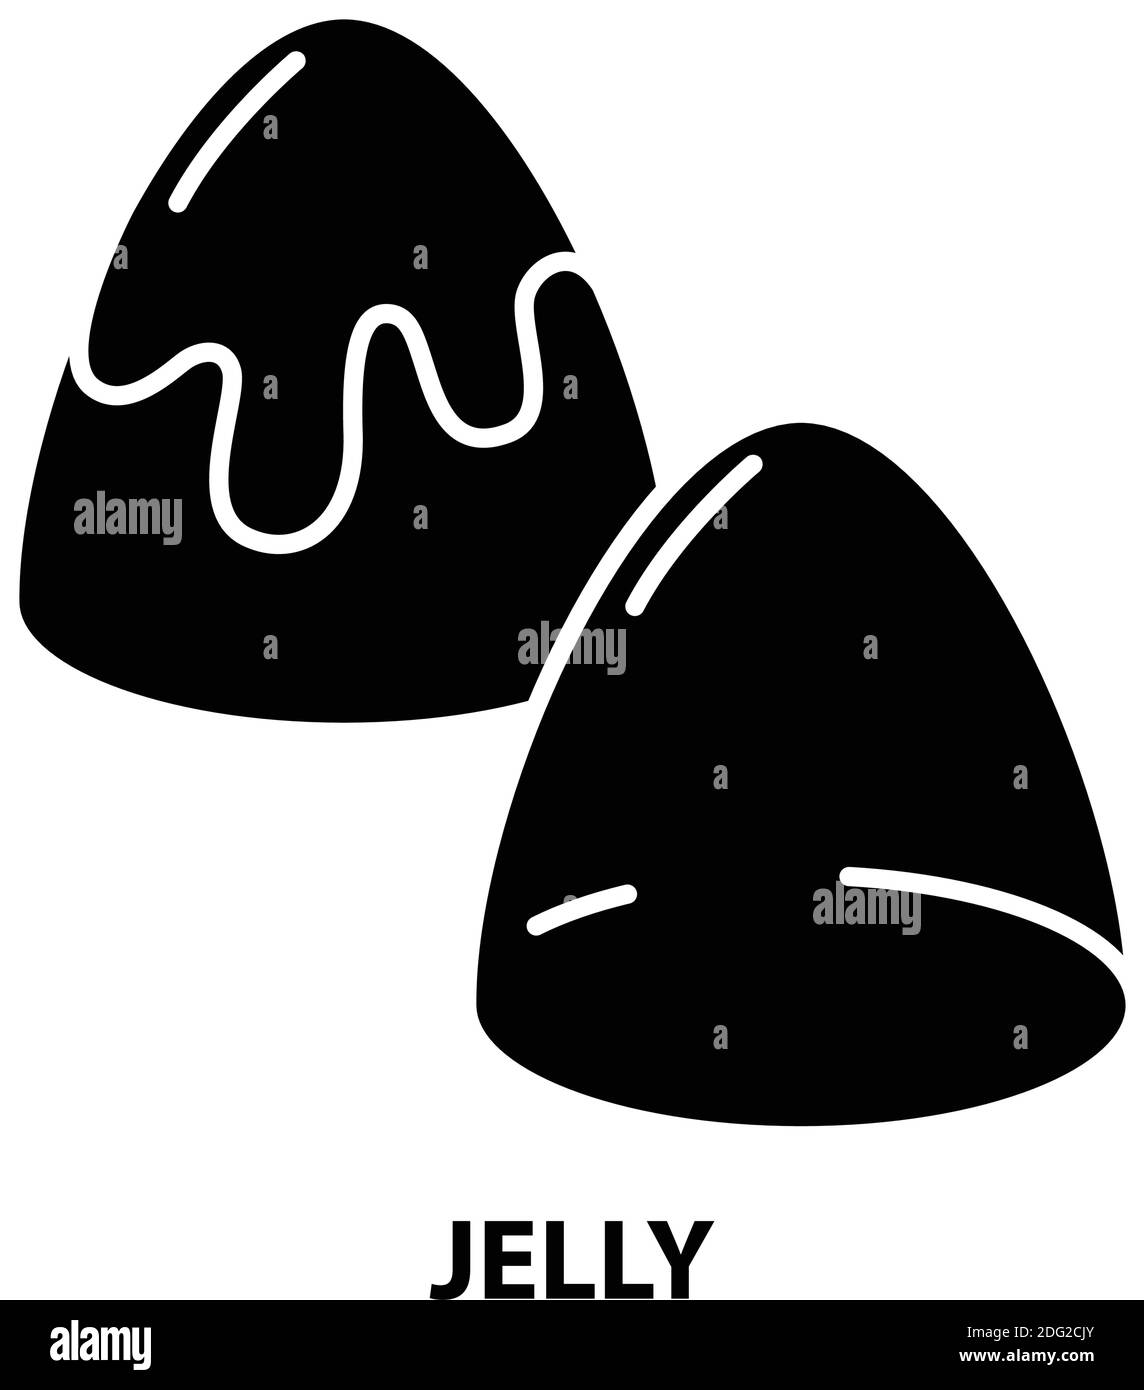 icona jelly, segno vettoriale nero con tratti modificabili, illustrazione del concetto Illustrazione Vettoriale